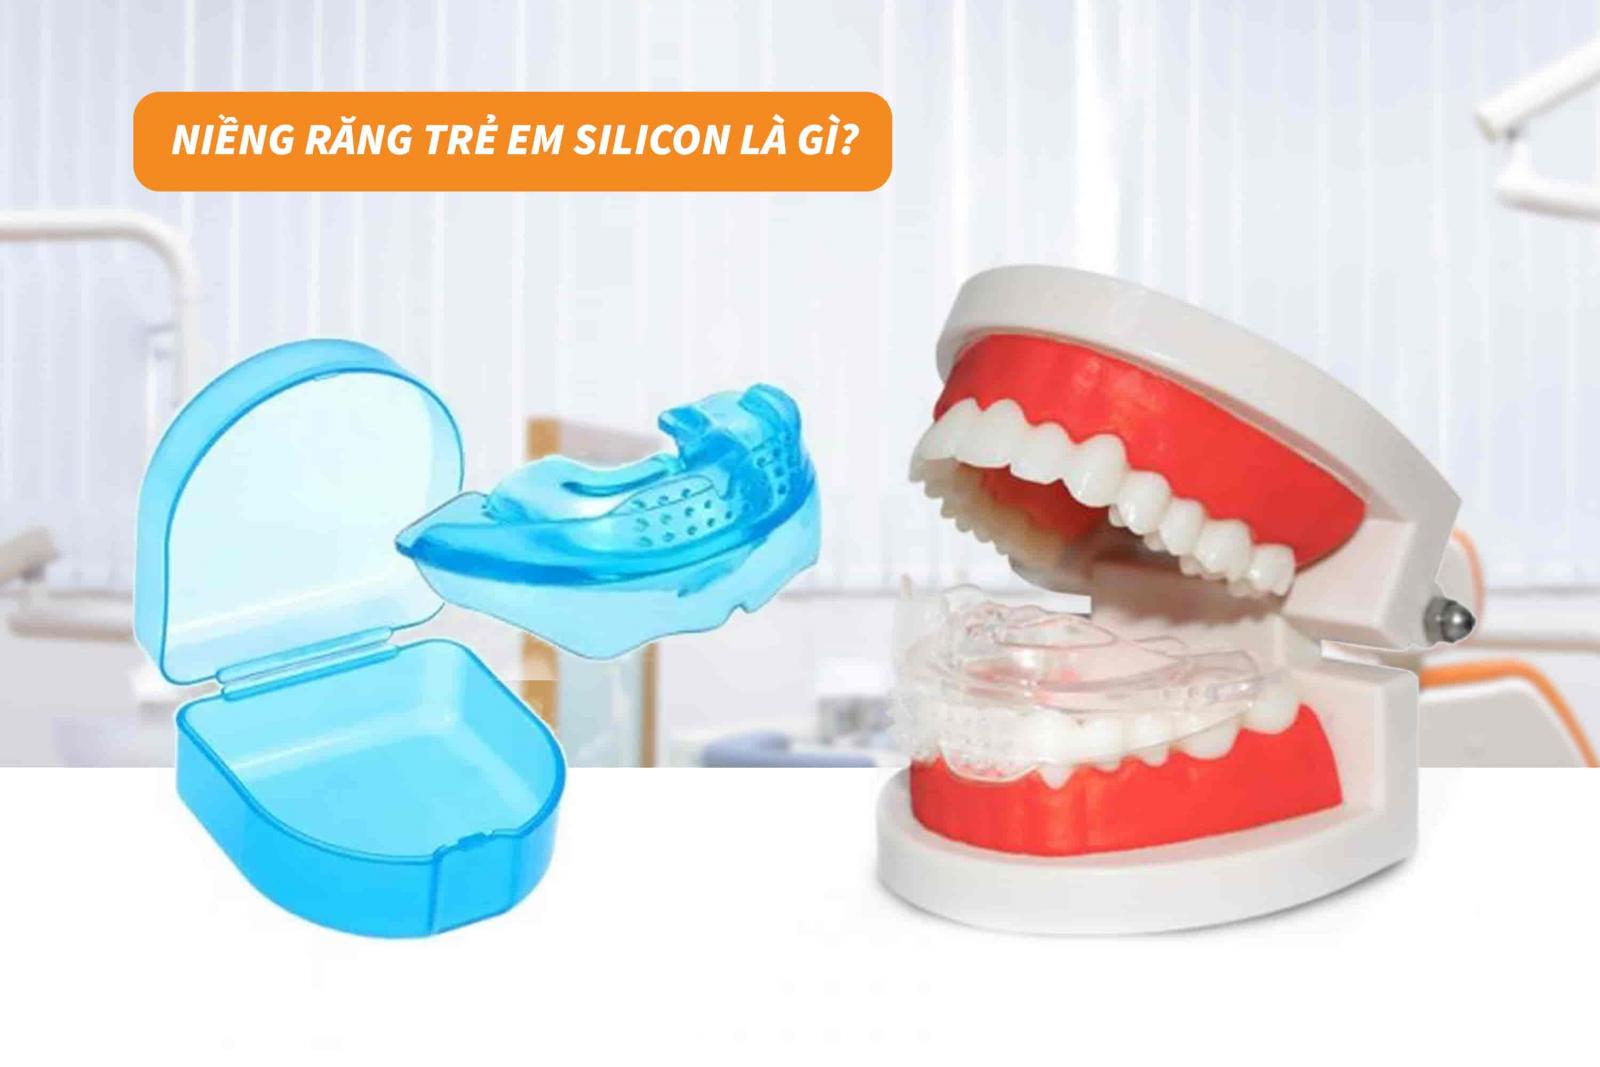 Niềng răng trẻ em silicon là gì?